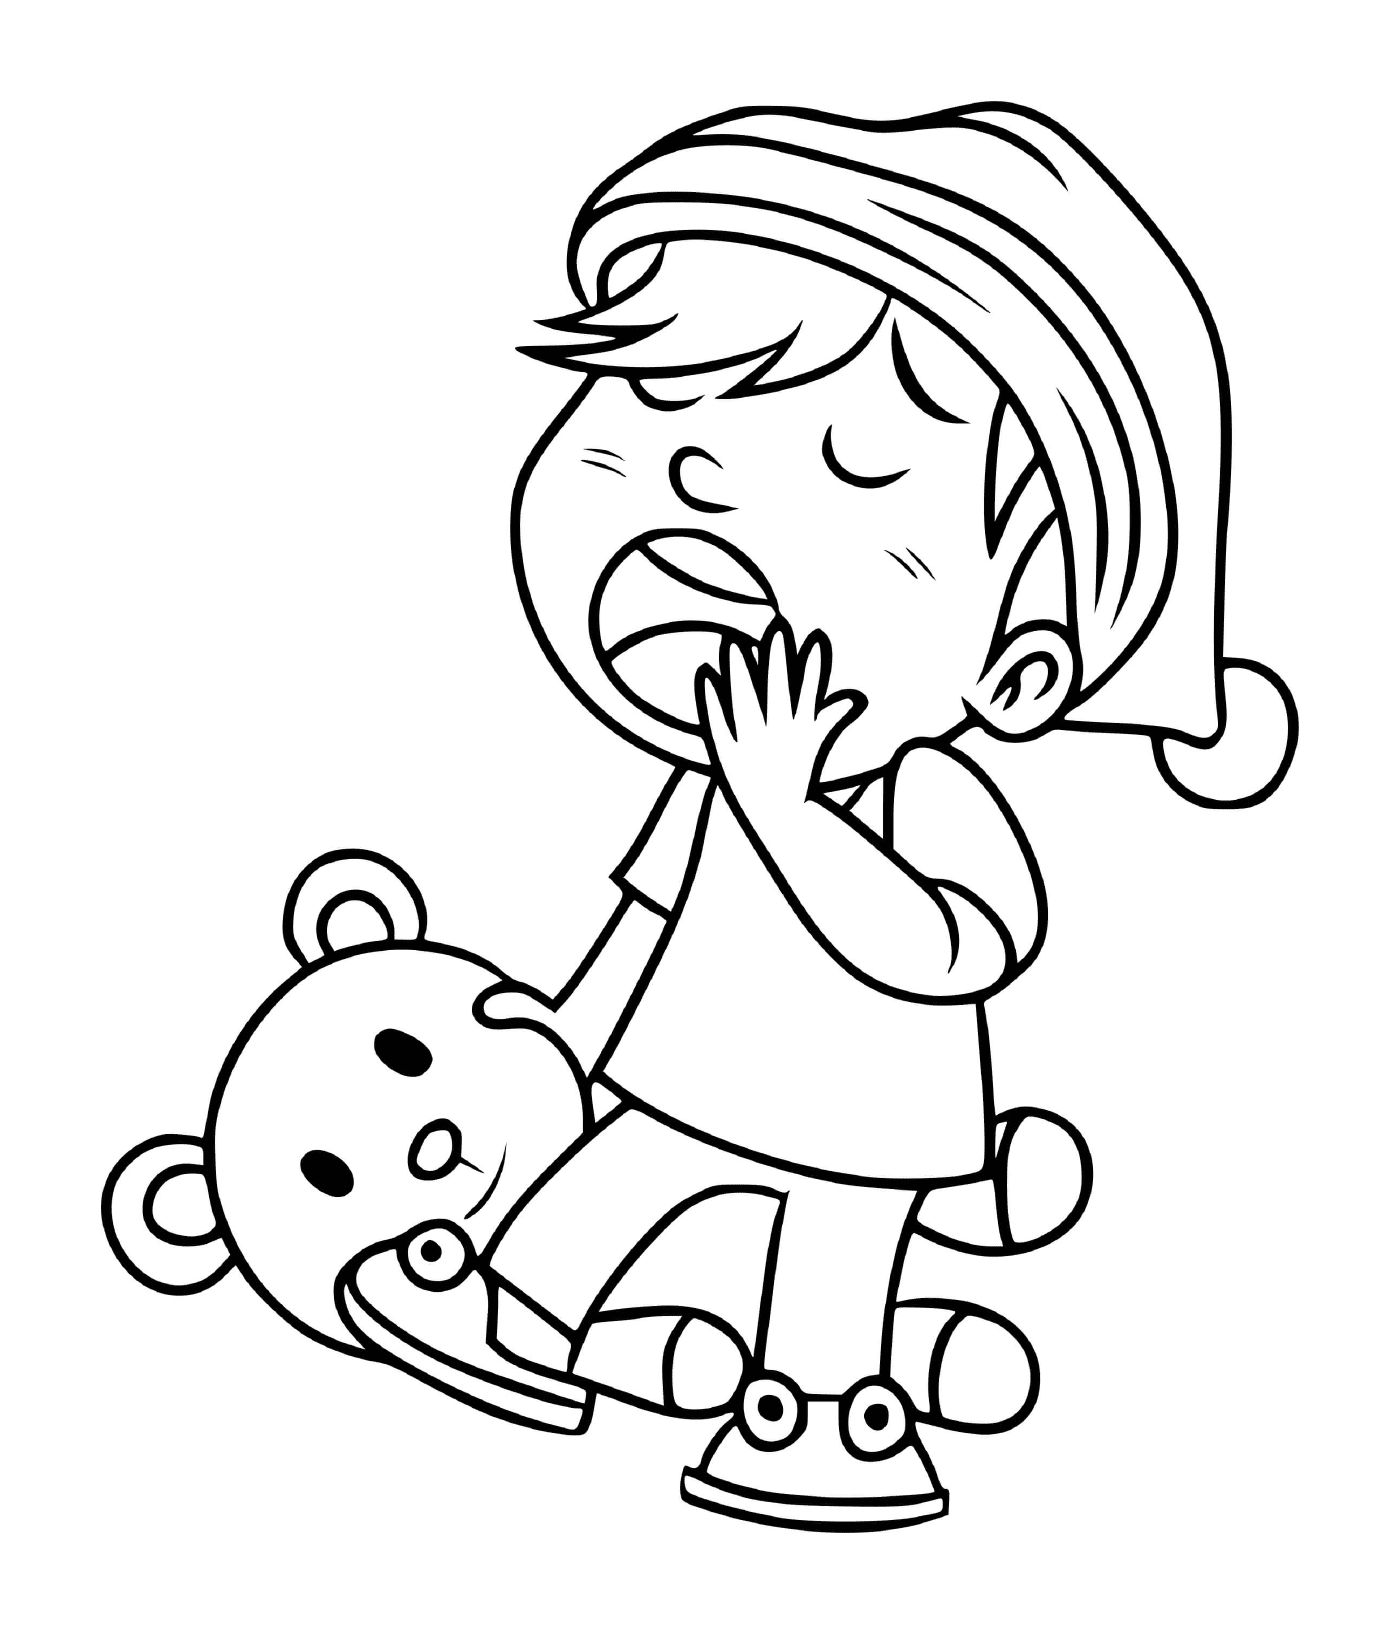 coloriage un enfant baille avec son nounours dans la main pret pour le sommeil